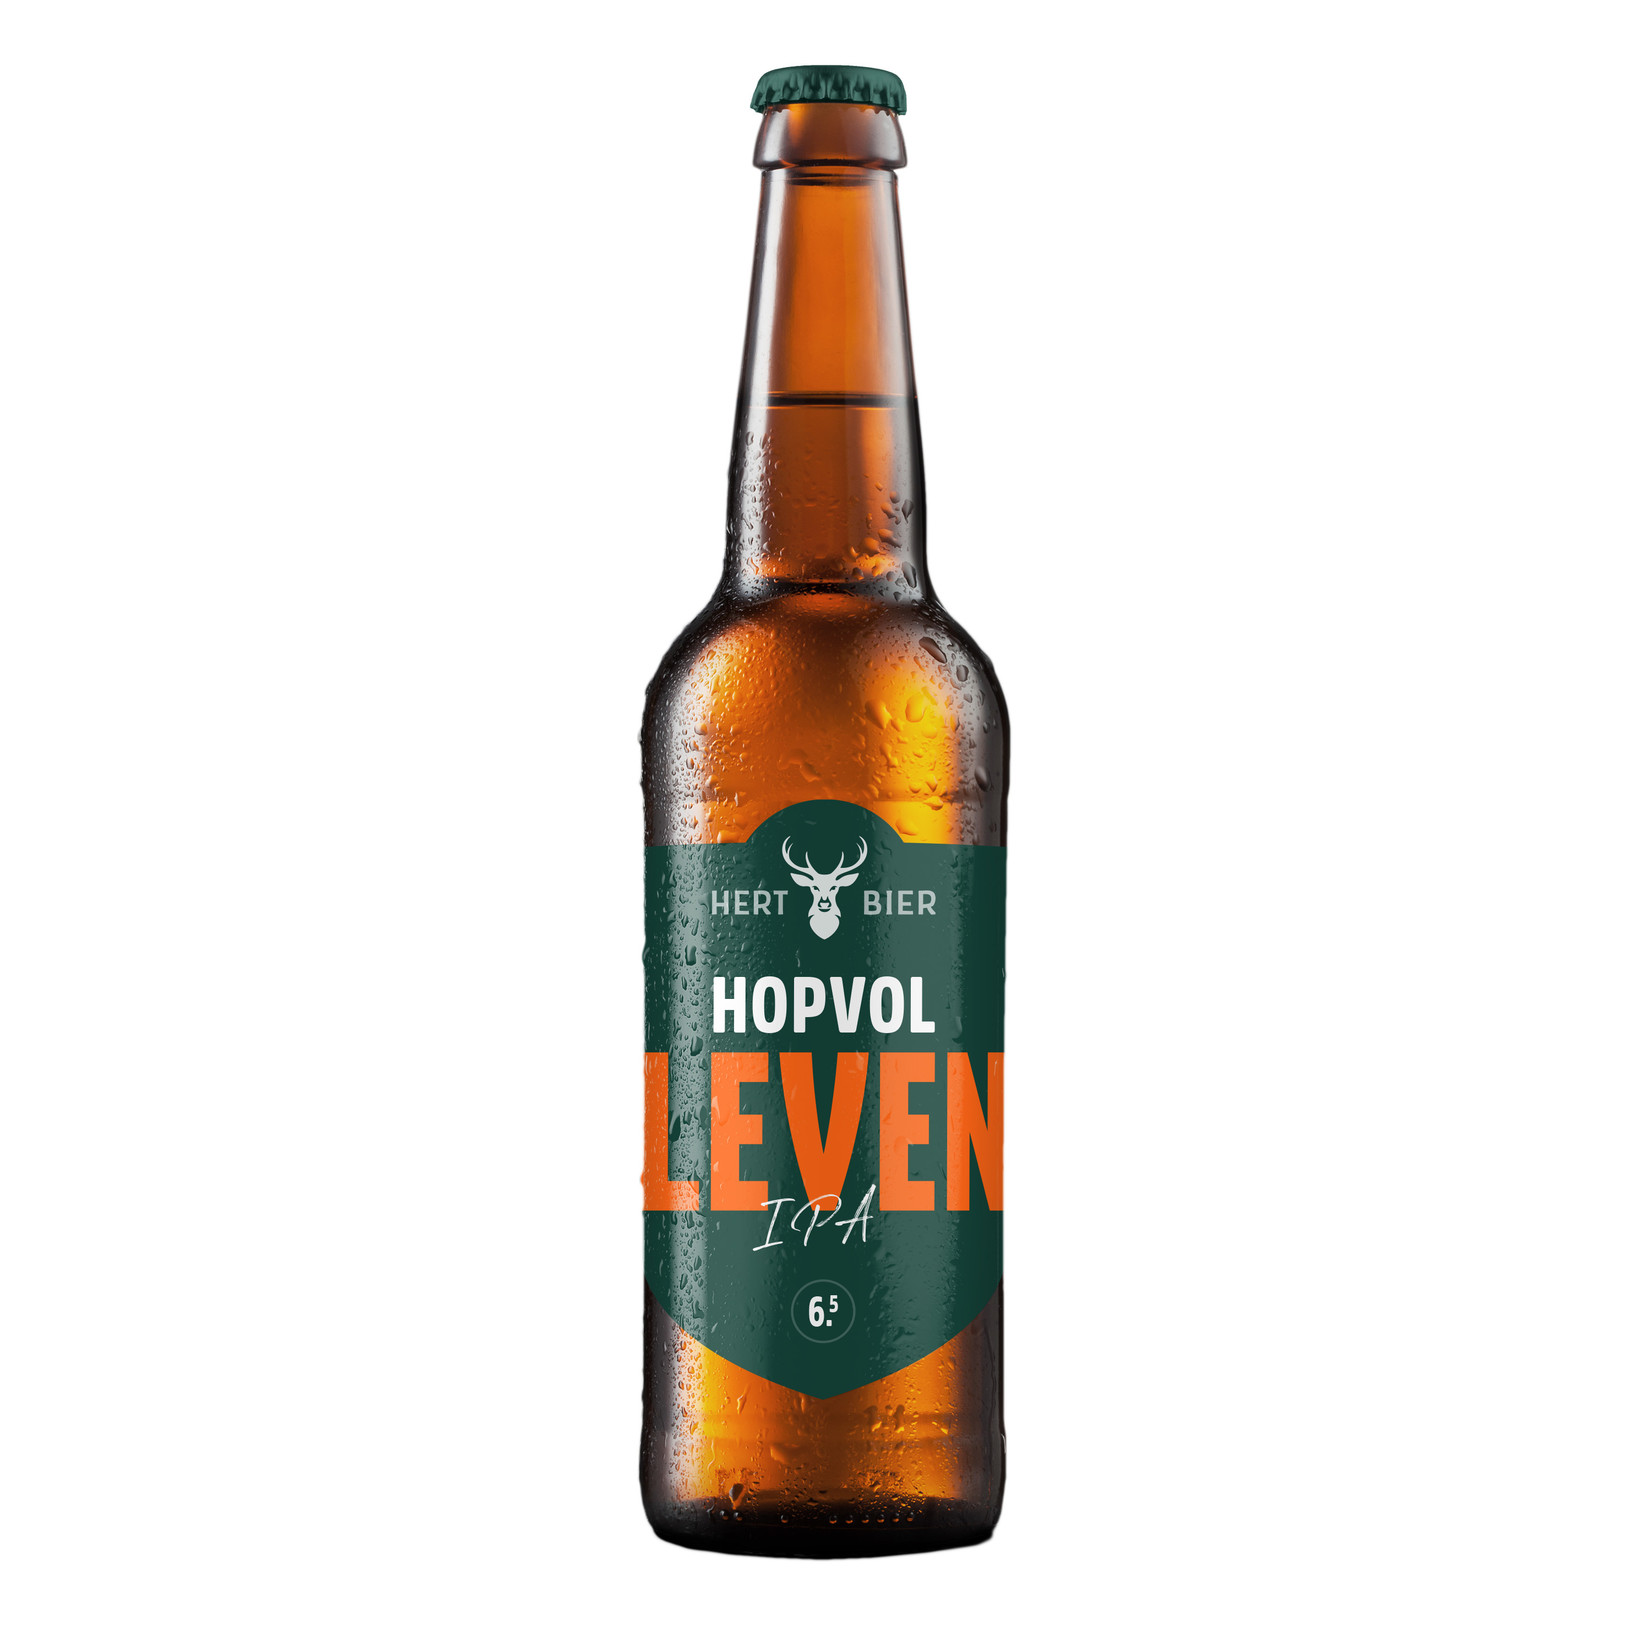 Hert Bier IPA bier - Hopvol Leven - 6,5%